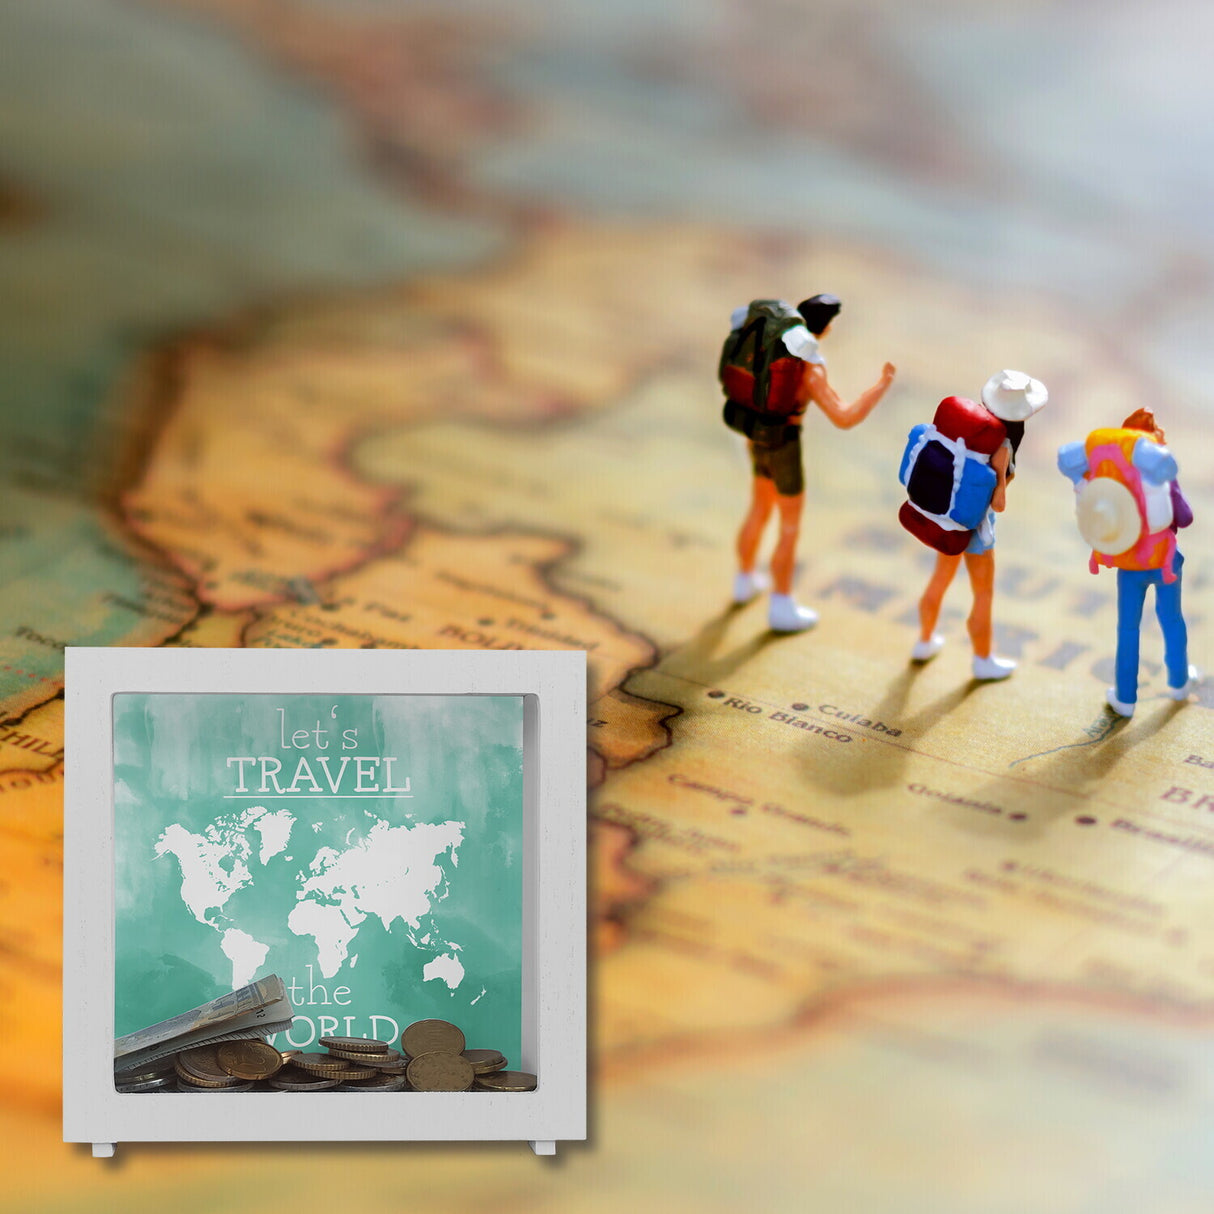 Spardose mit Weltkarten Motiv und Text - let's travel the world in Türkis